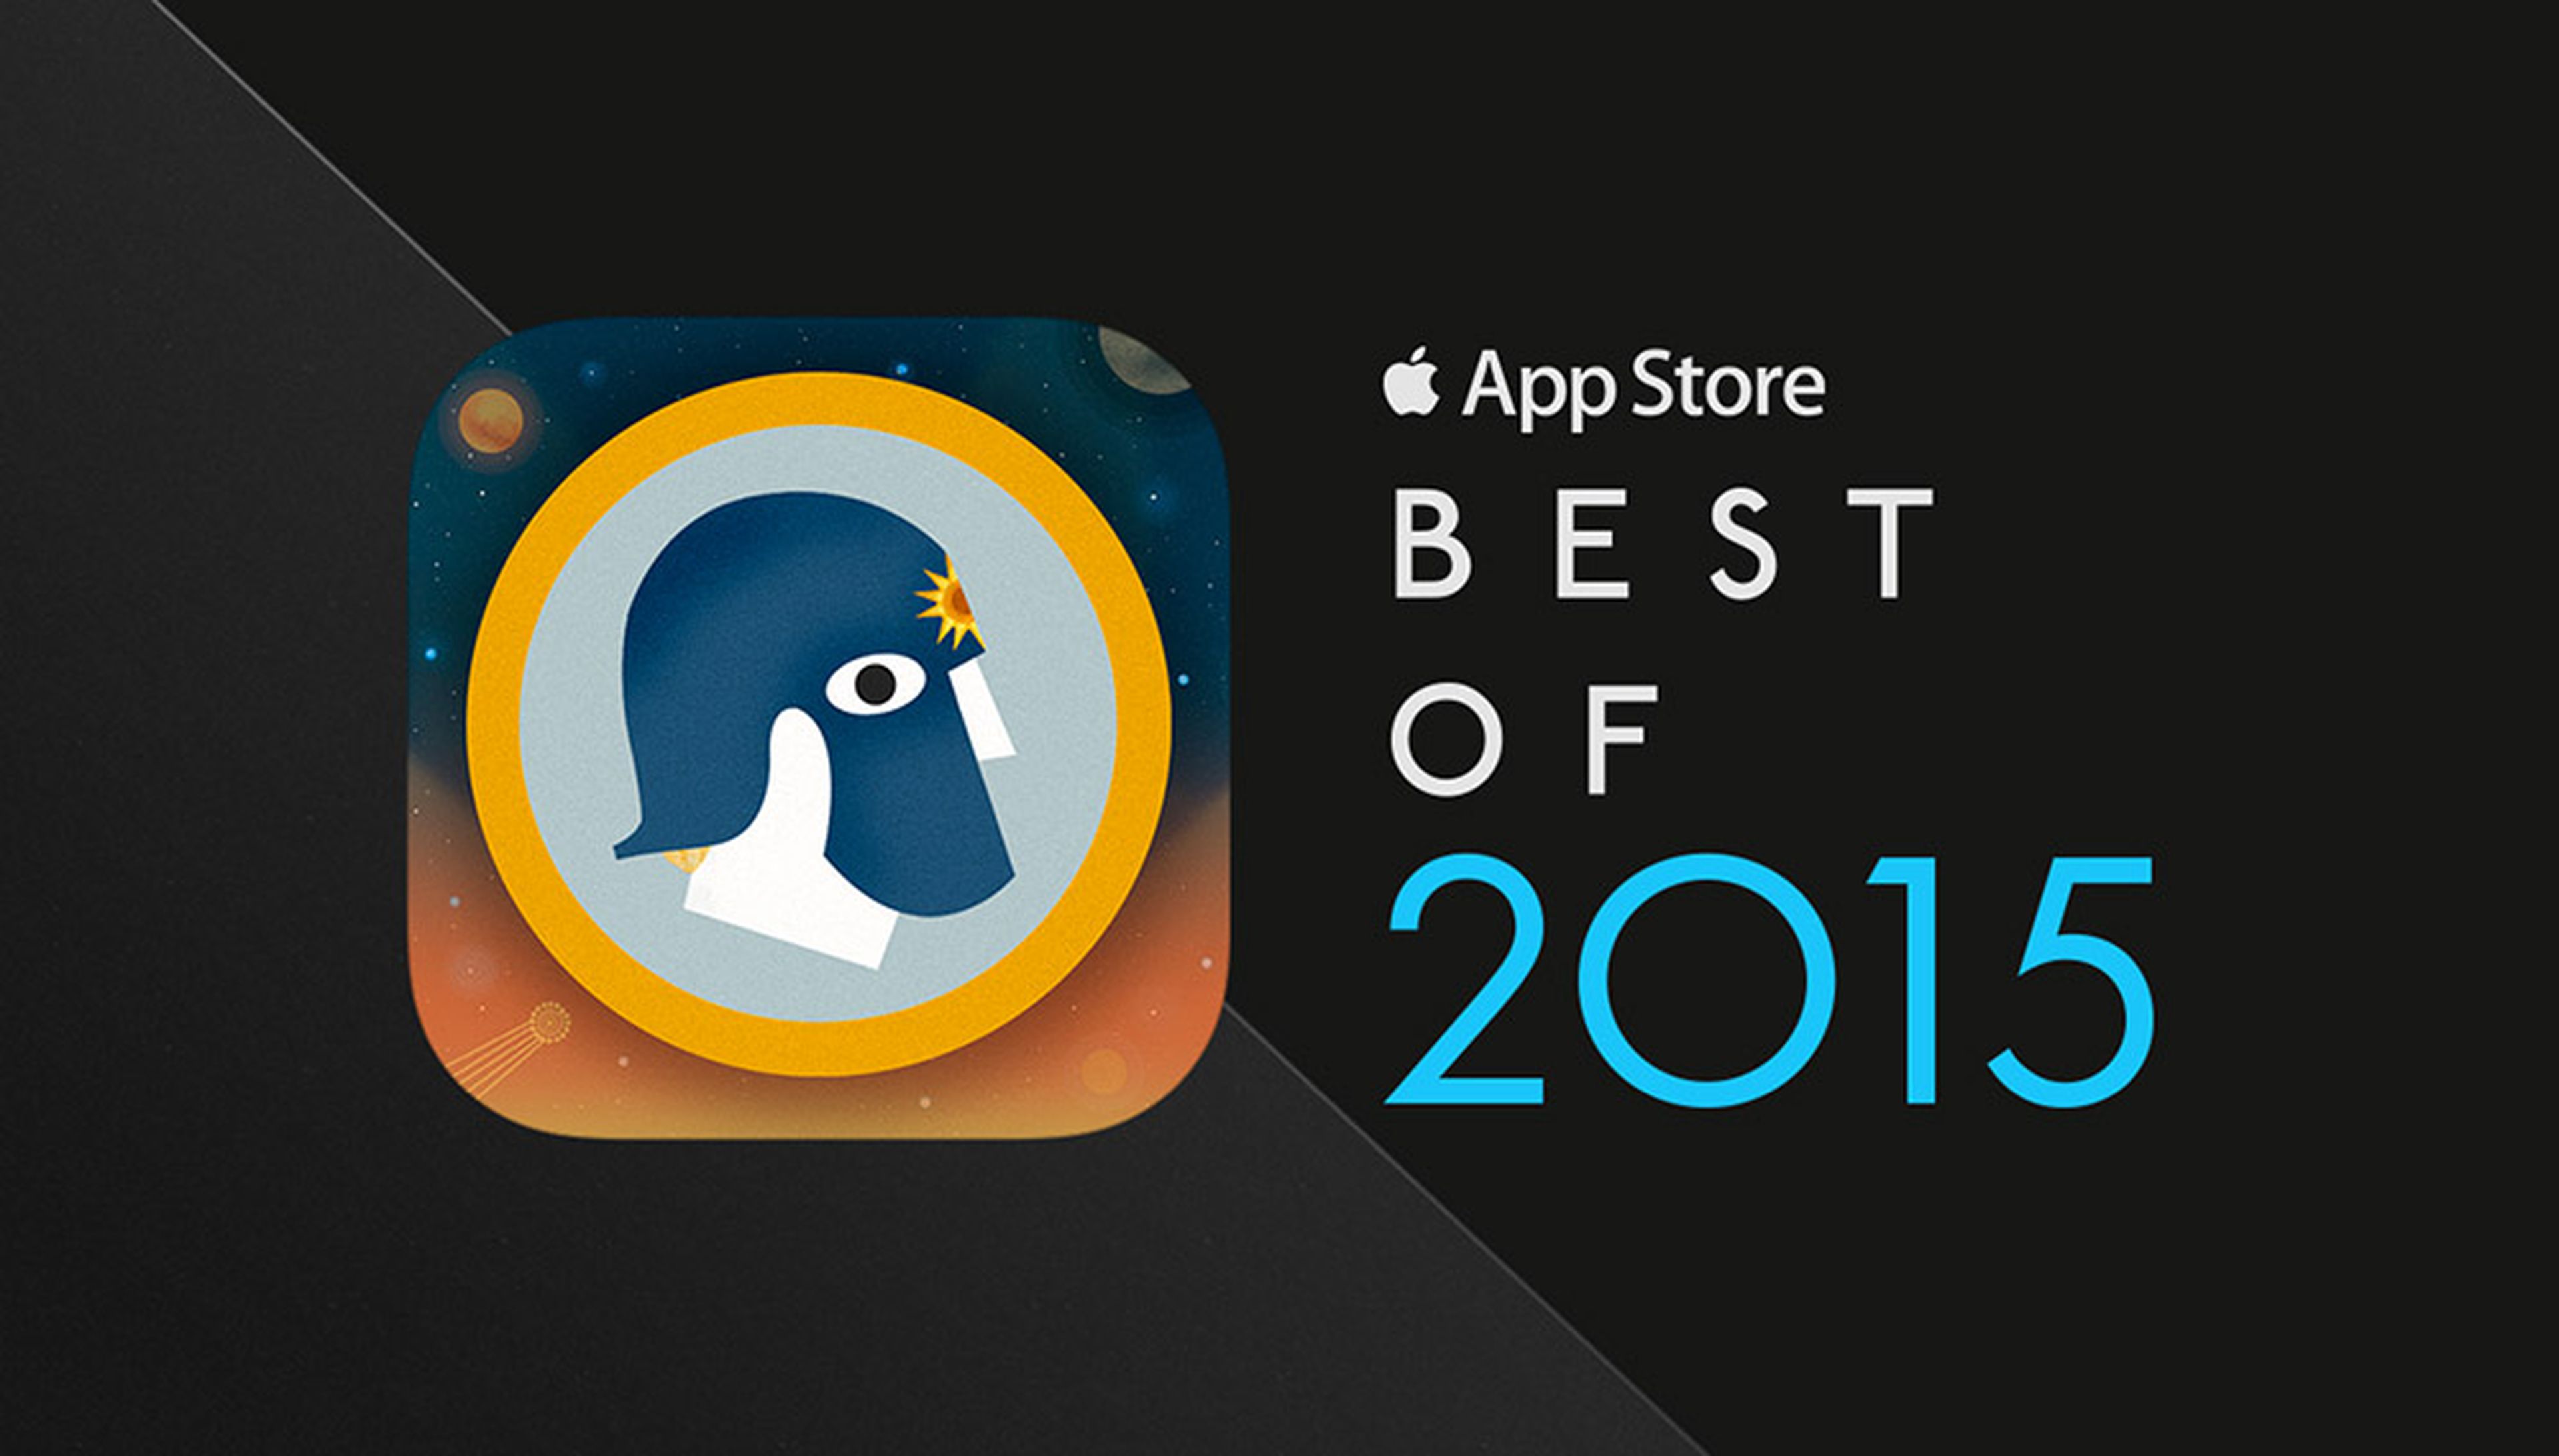 Astrå, el segundo videojuego desarrollado por Fabuloso Games, ha sido seleccionado como uno de los mejores juegos del año 2015 en la App Store.